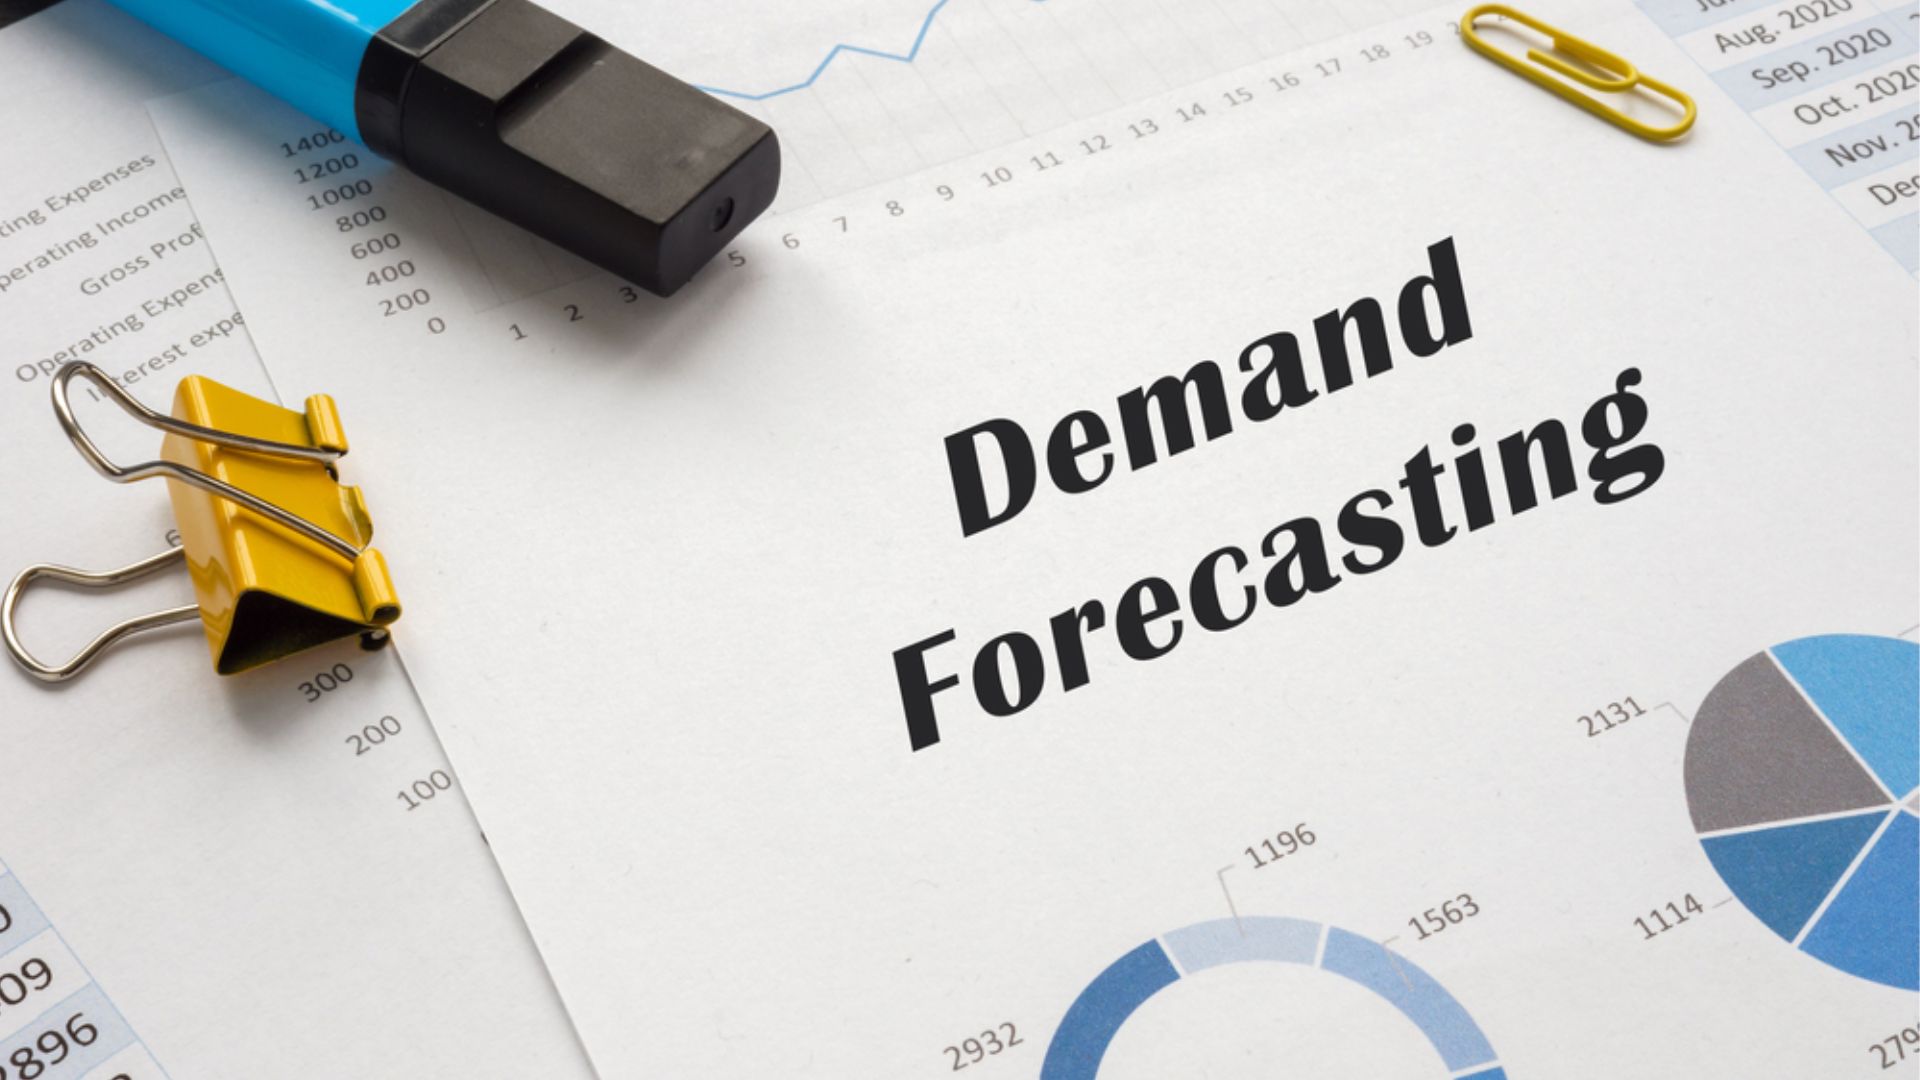 Demand forecasting